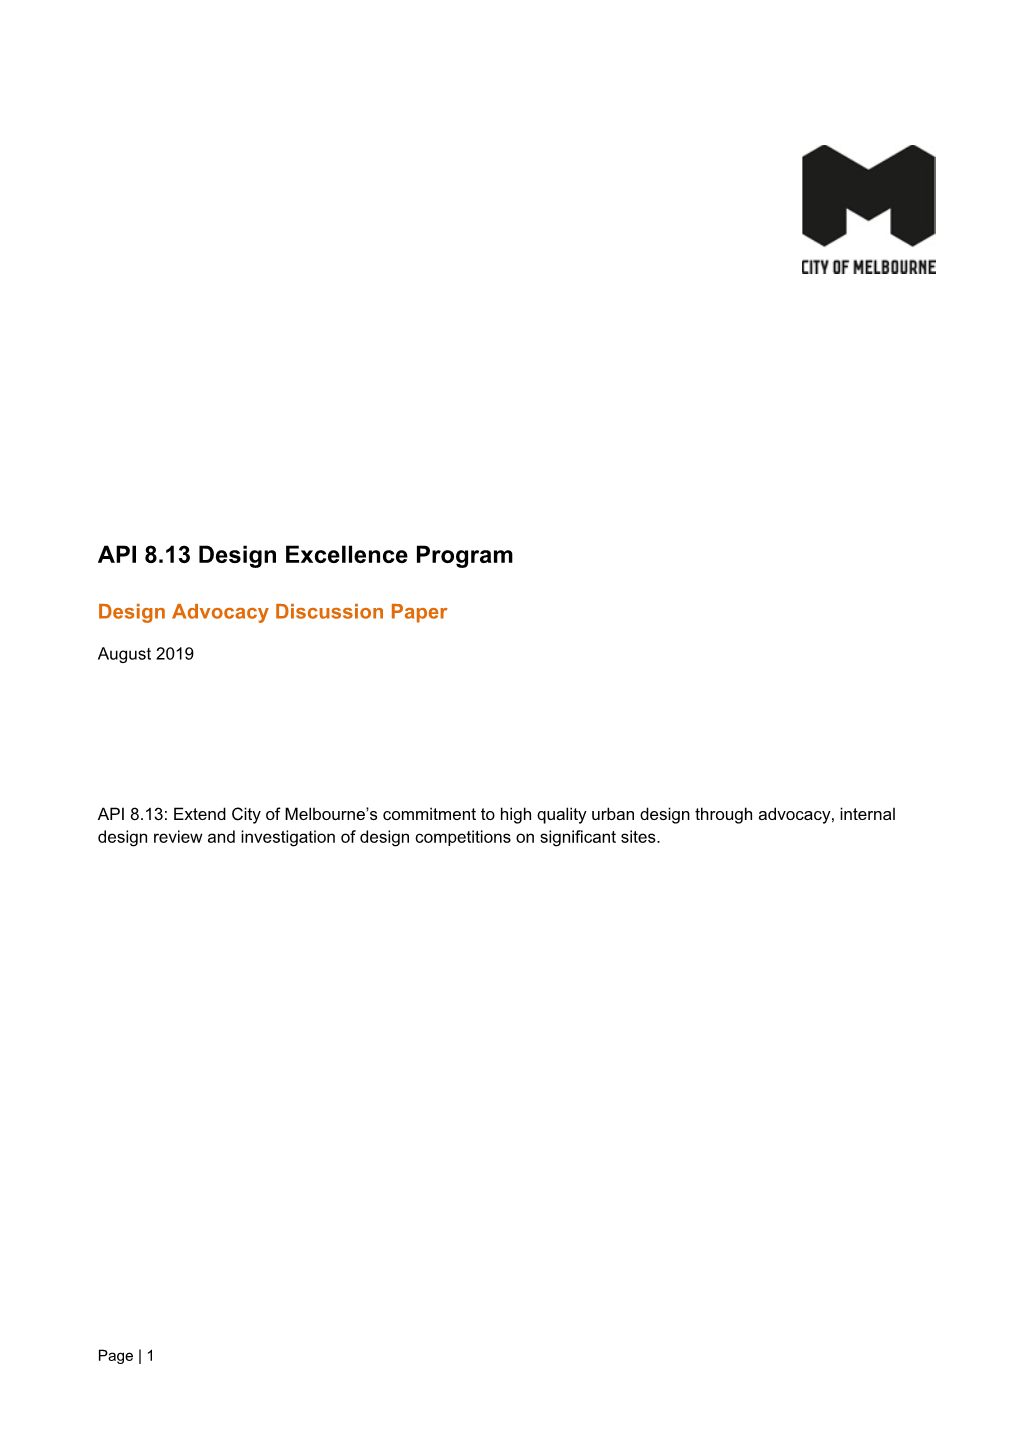 Design Advocacy Discussion Paper